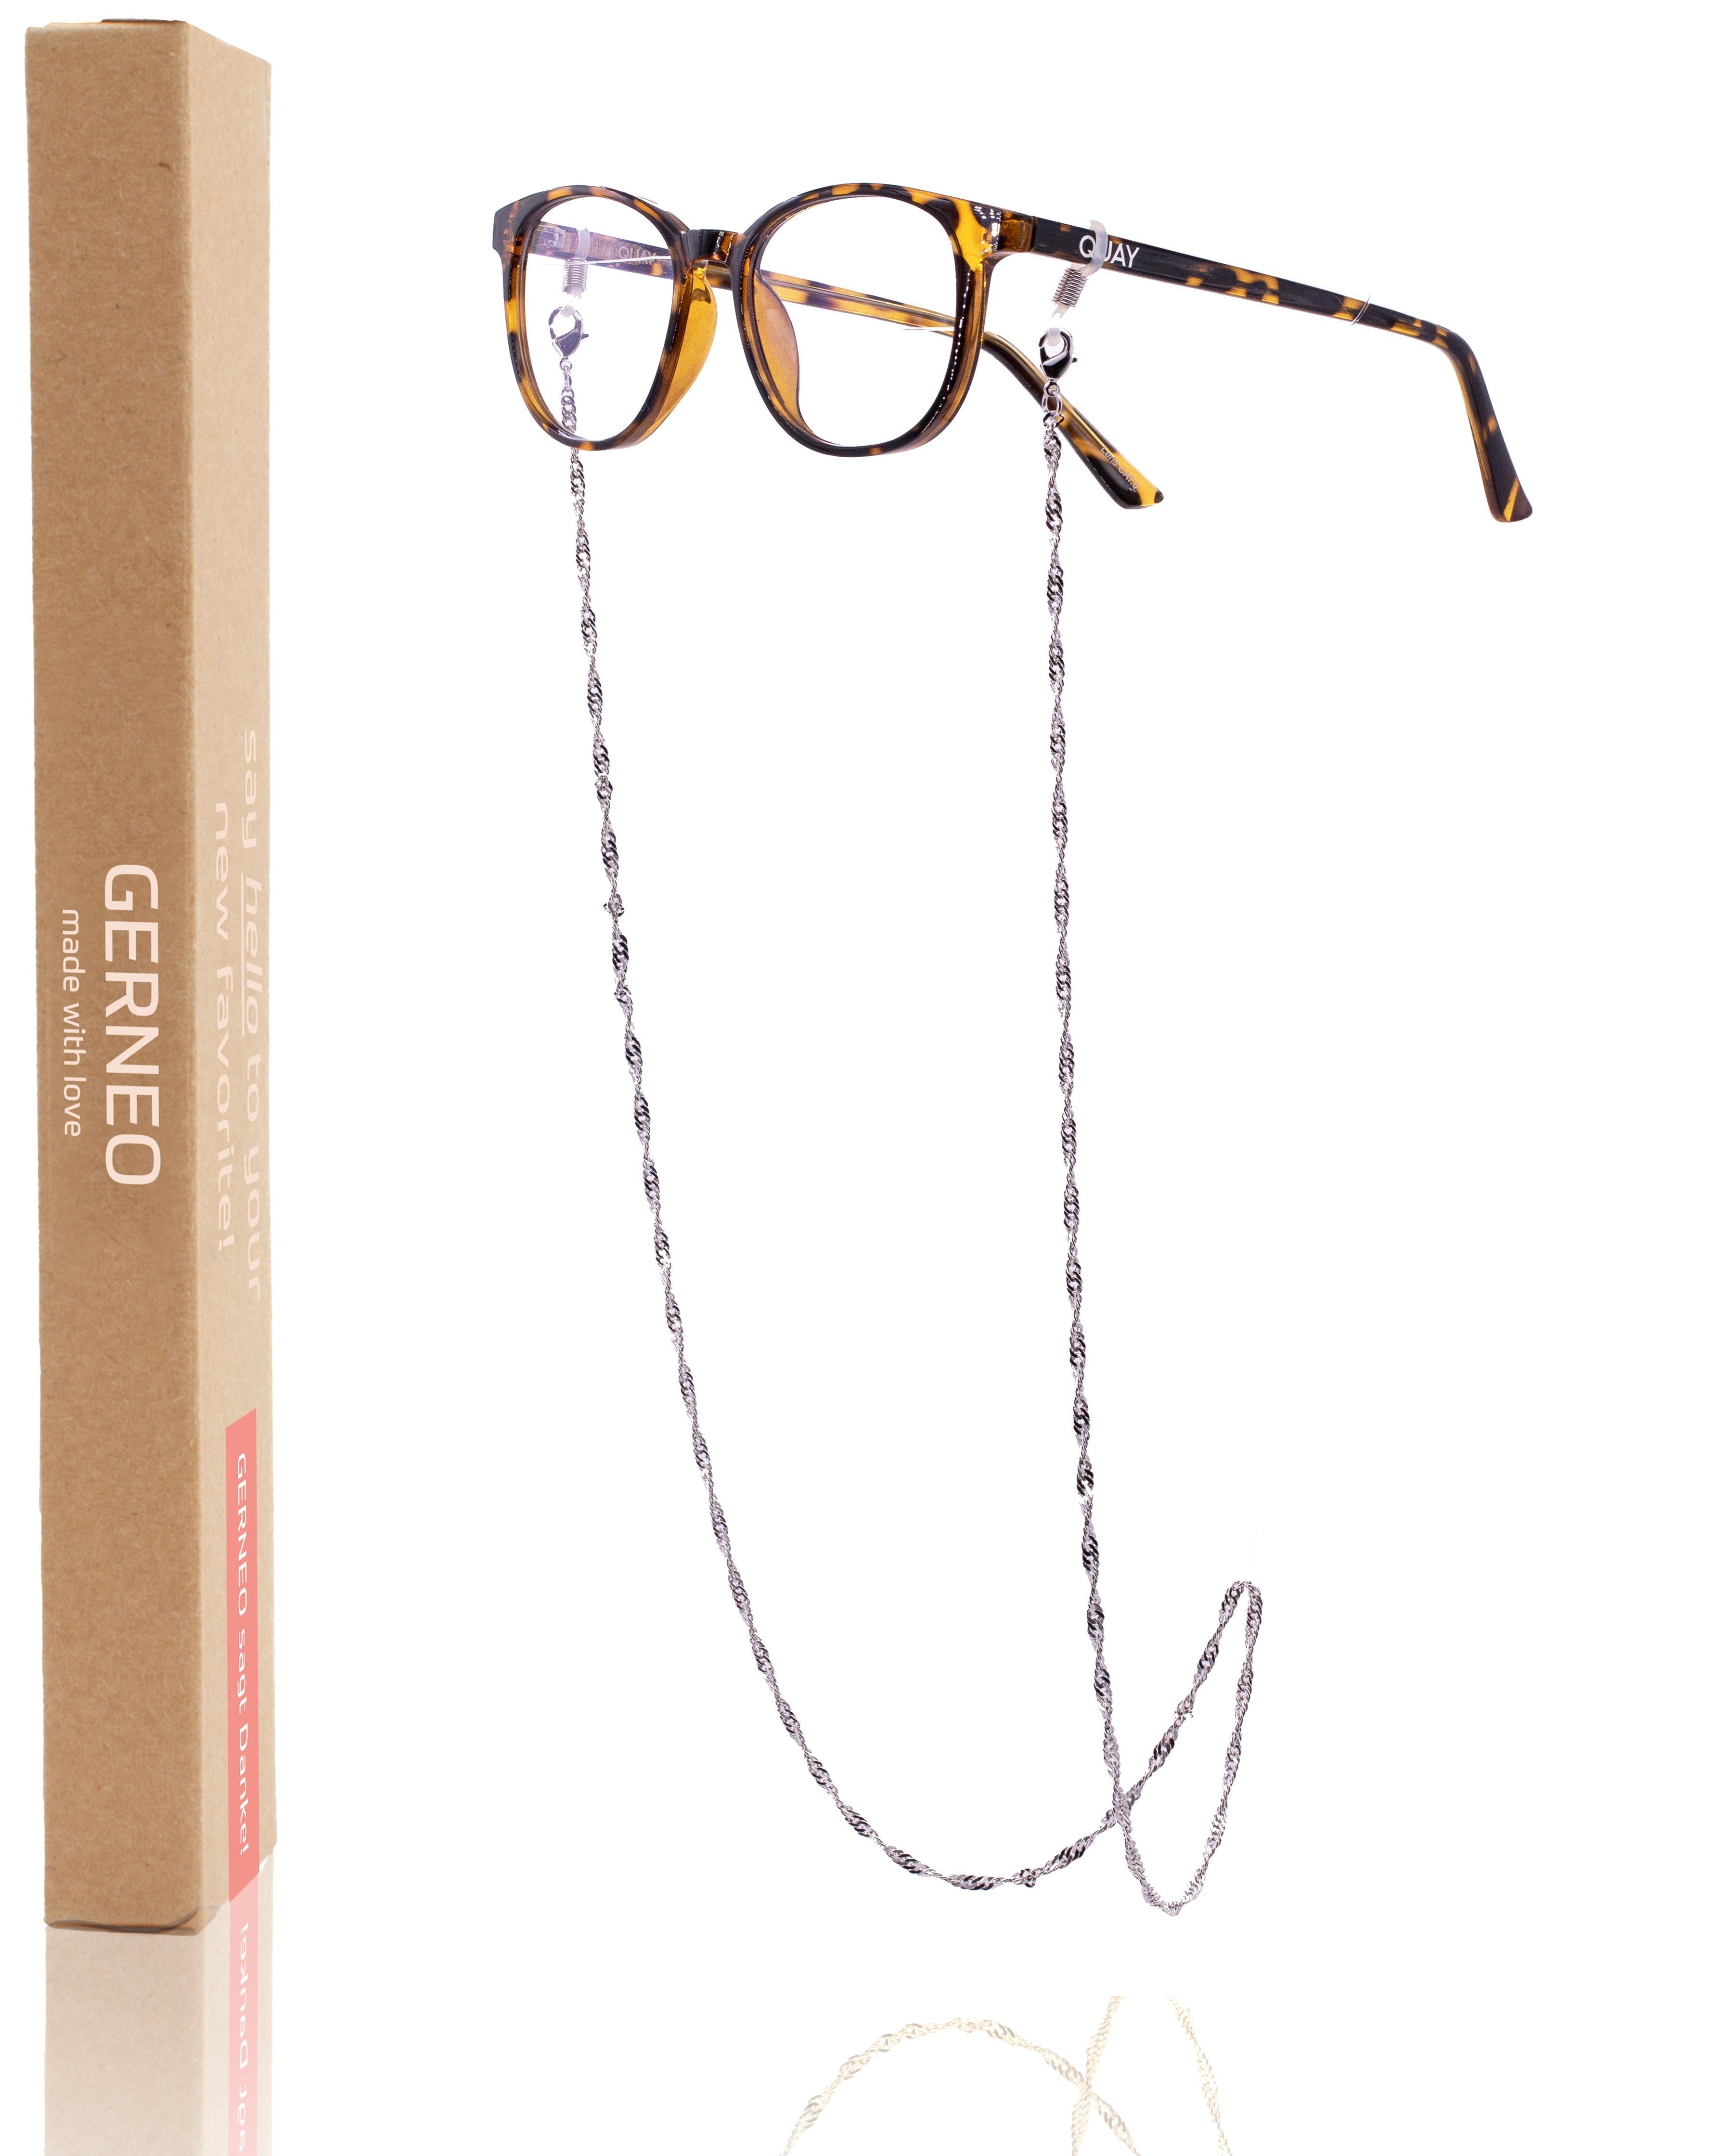 GERNEO Brillenkette GERNEO® - Toronto – Maskenhalter & Brillenkette Gold und Silber, korrosionsbeständig einzigartig hochwertige Brillen Kette Brillenband